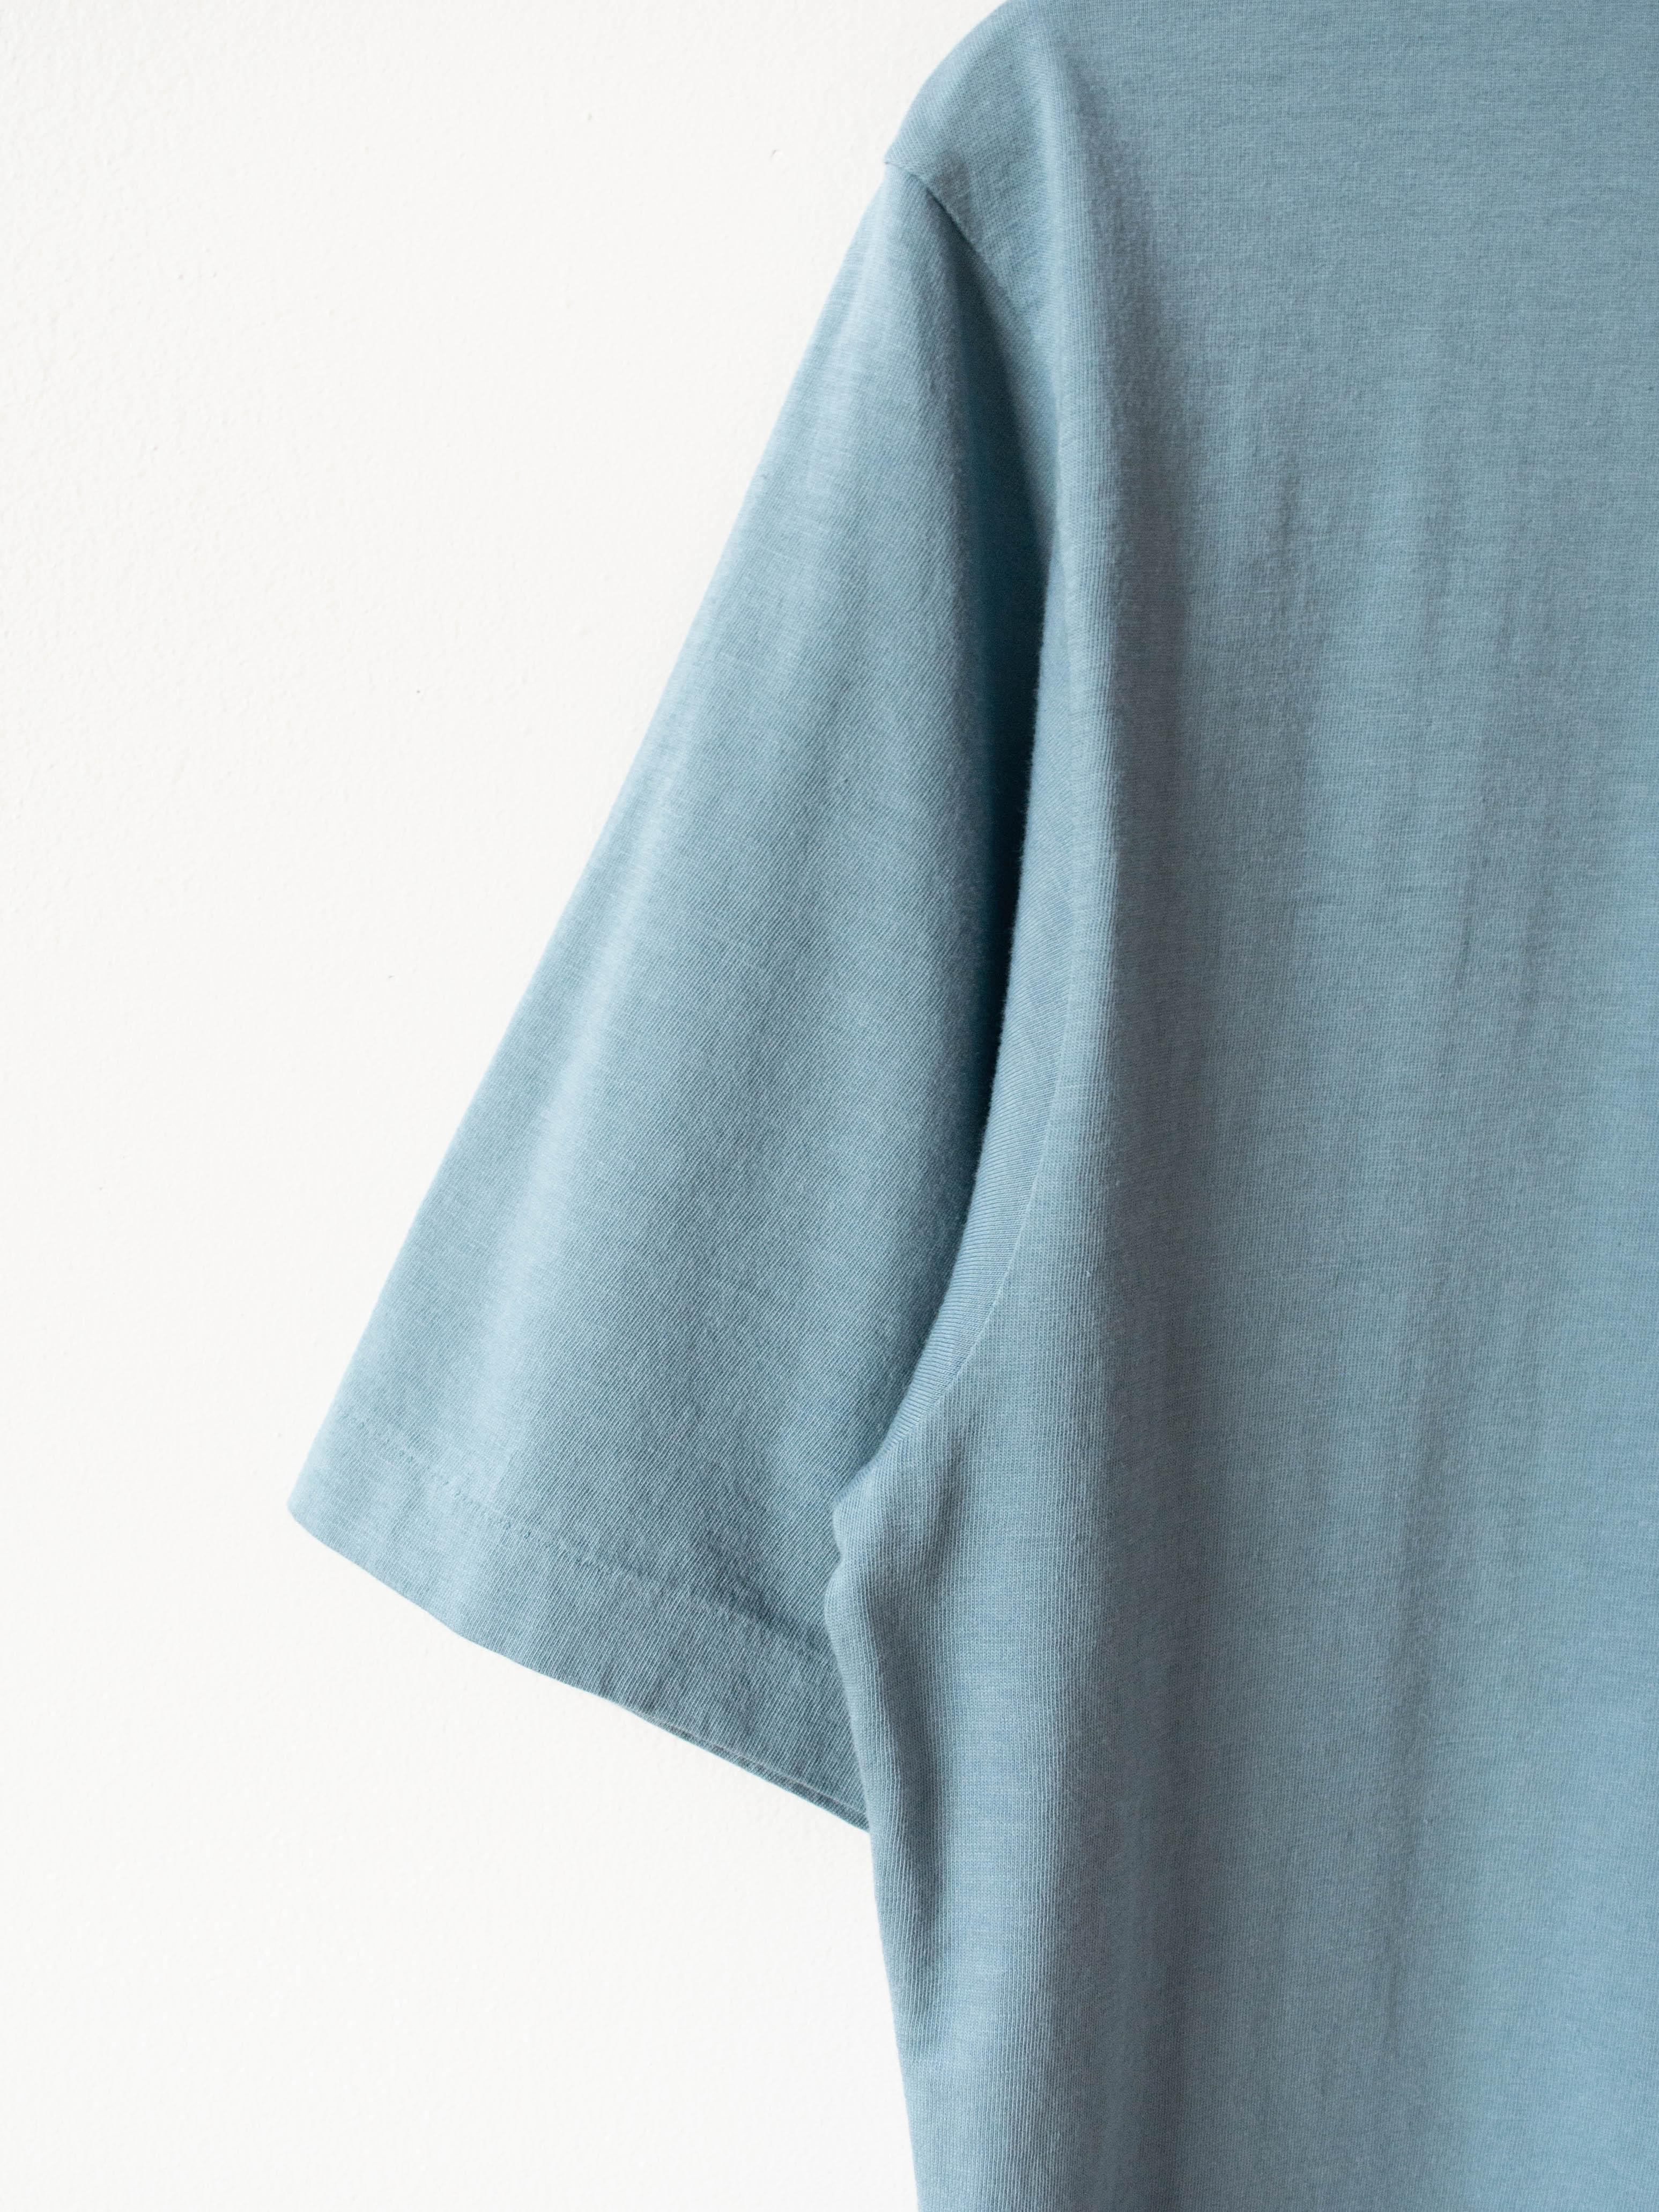 Namu Shop - Phlannel Light Suvin Cotton T-Shirt - Blue